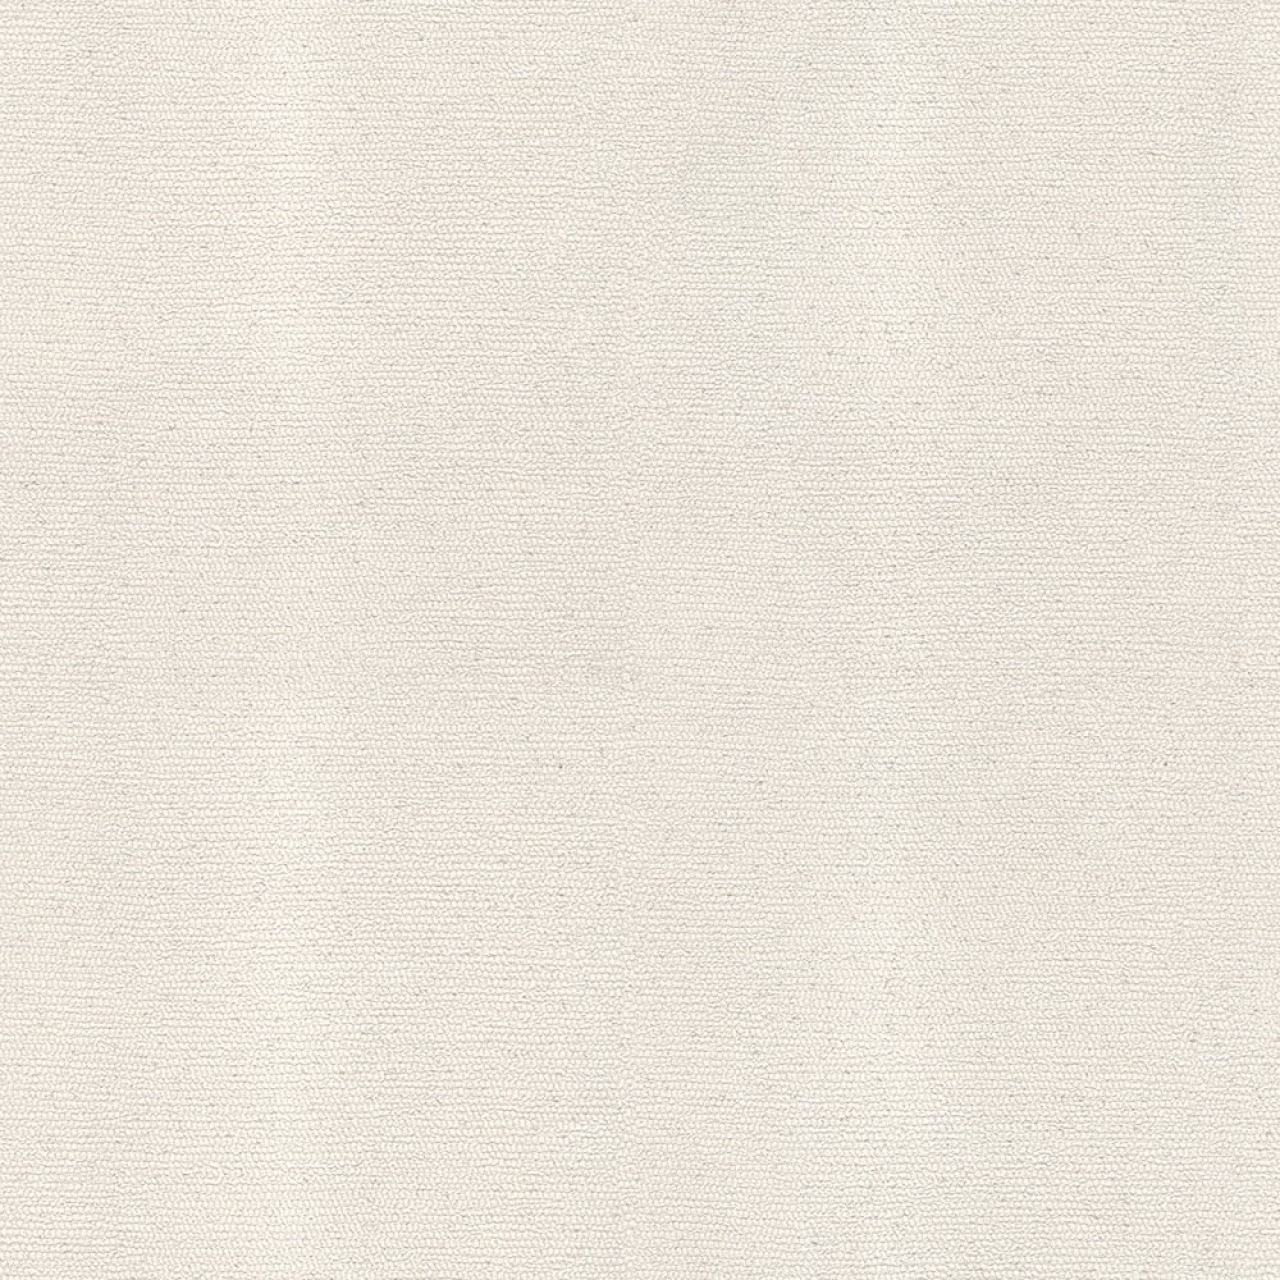 Decowall Harmony Beyaz Simli Mantar Desen Duvar Kağıdı 208-05